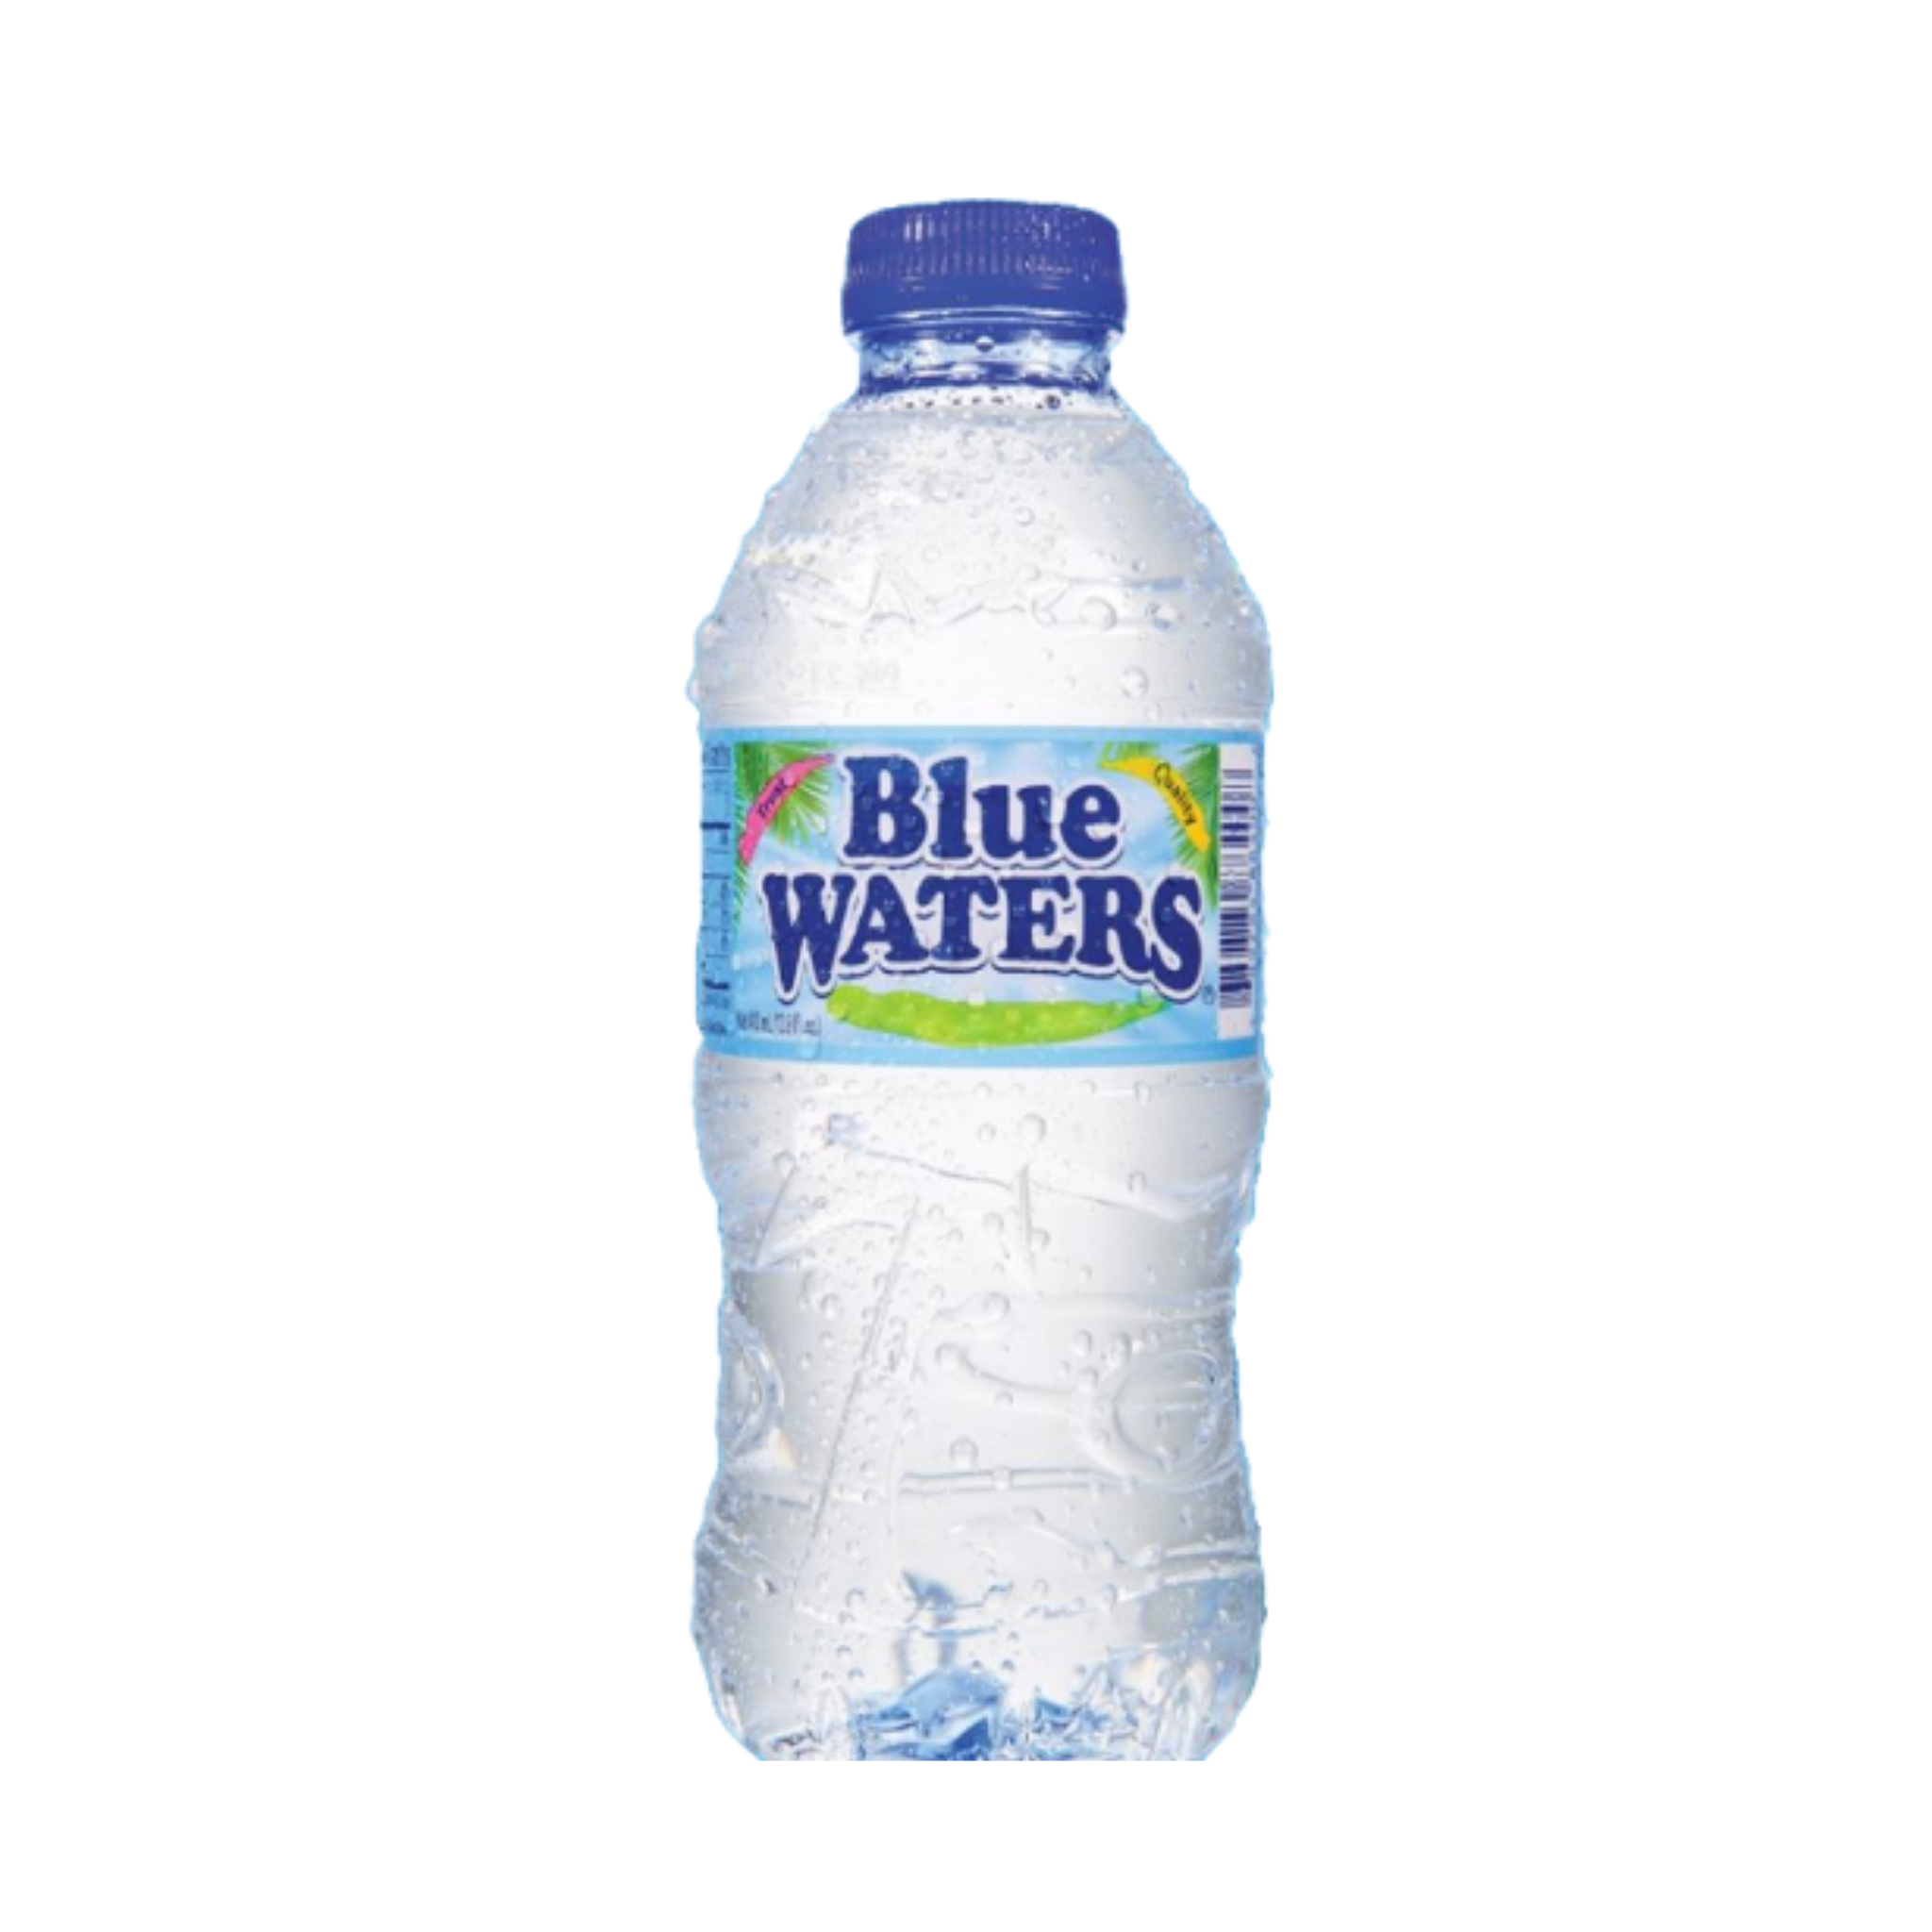 Синяя вода купить. Blue Water вода. Бутылка для воды. Blue Water Bottle. Вода в голубой бутылке.